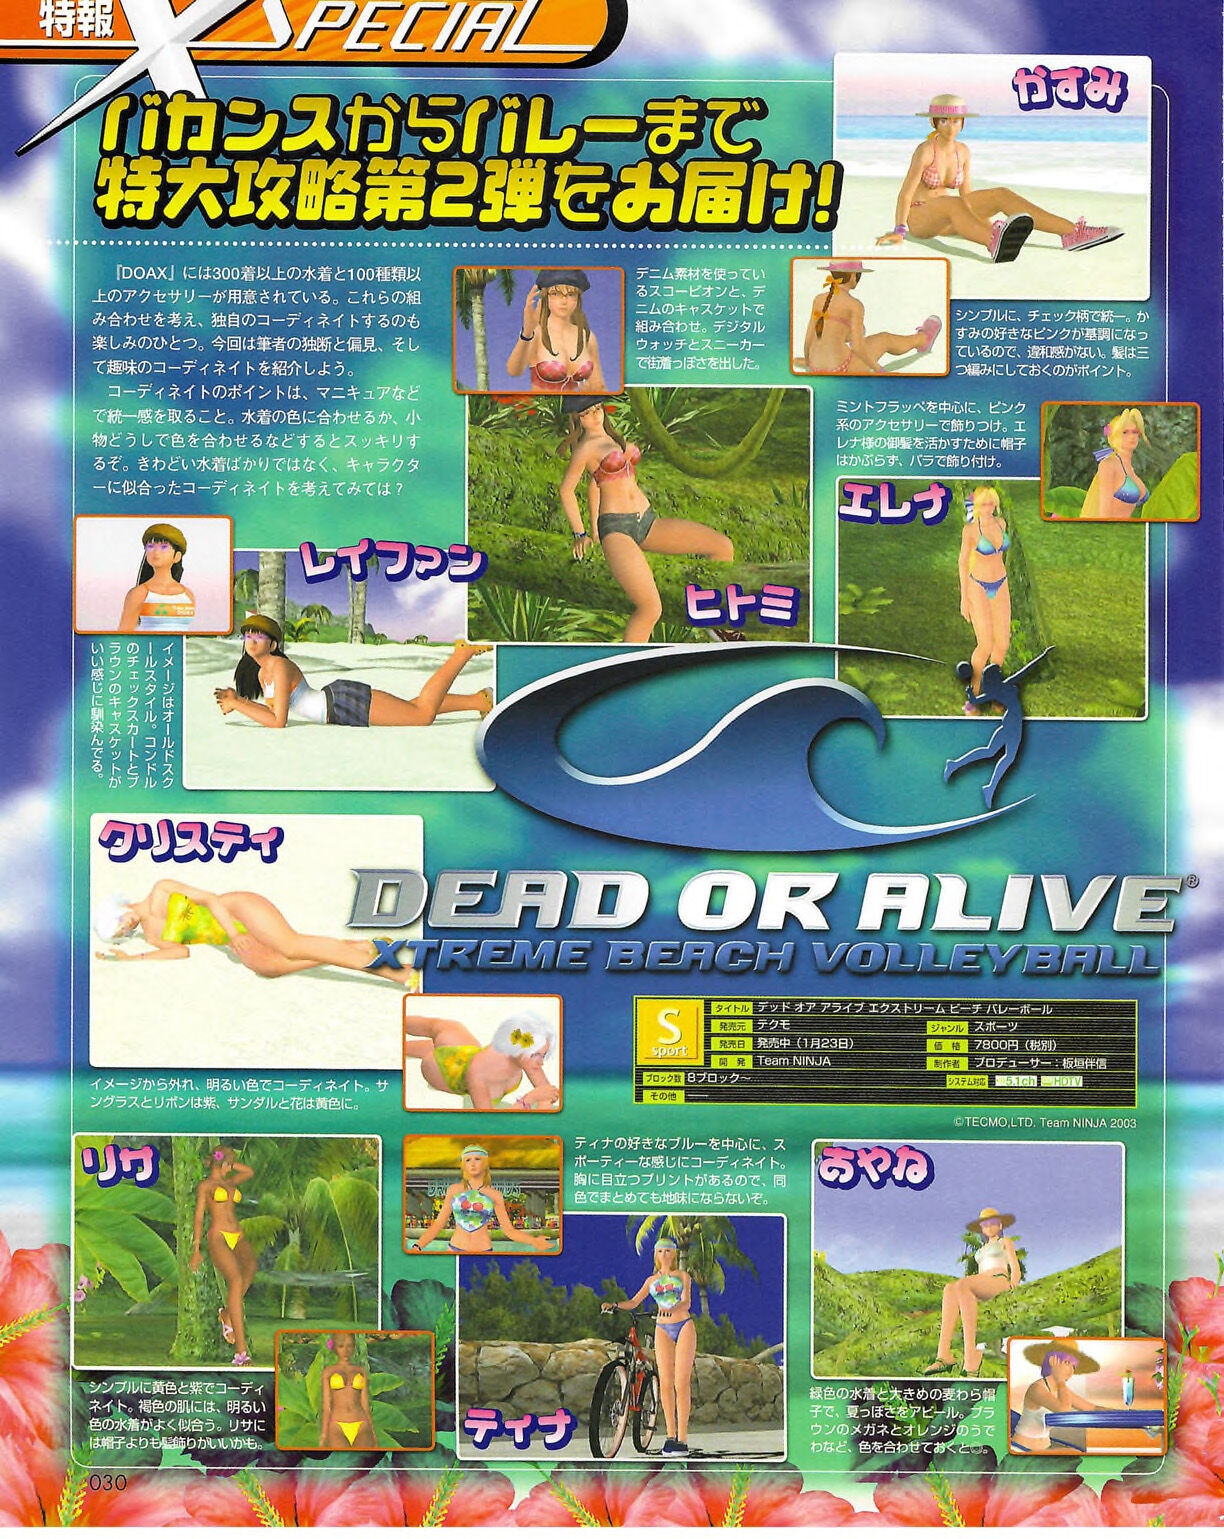 Famitsu_Xbox_2003-04_jp2 29